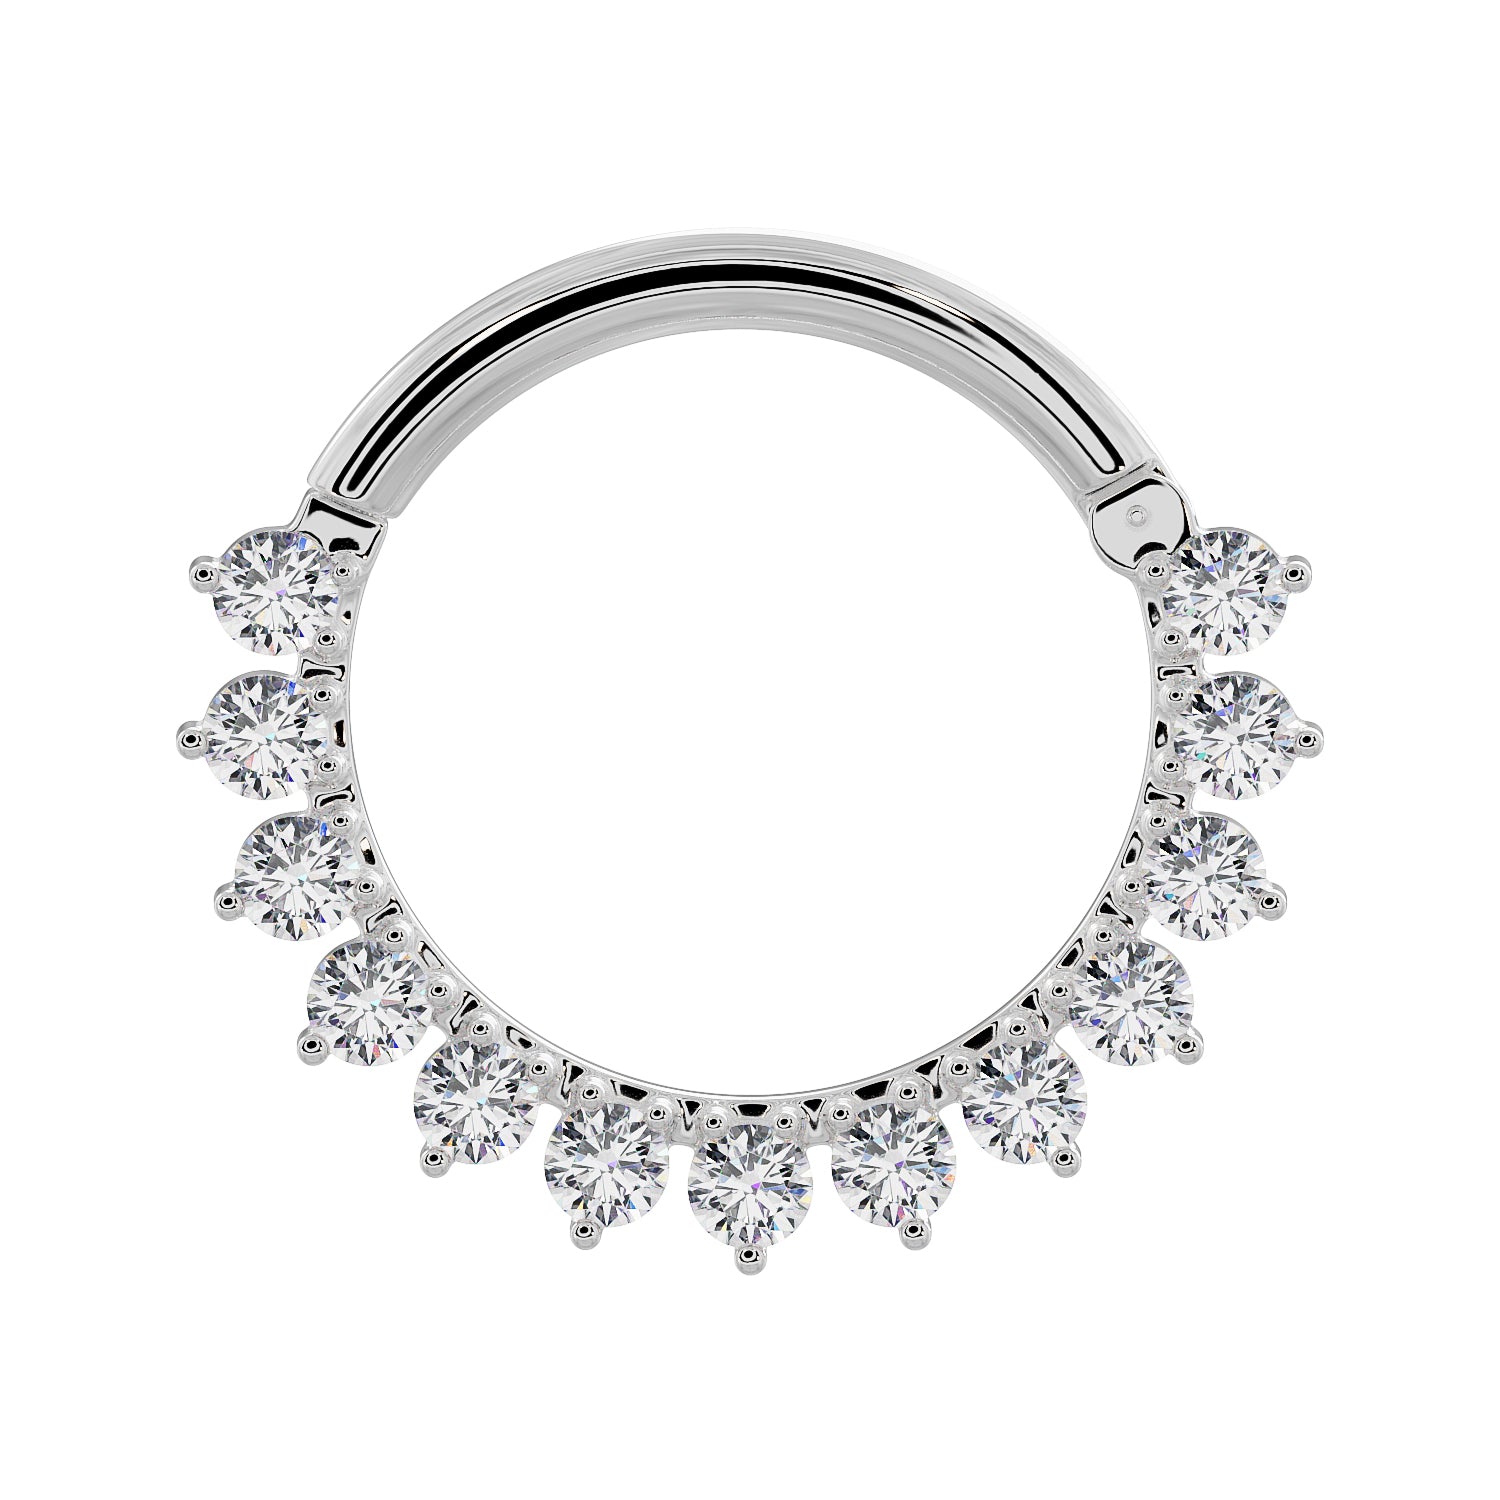 Diamond Petal 14K Gold Clicker Ring